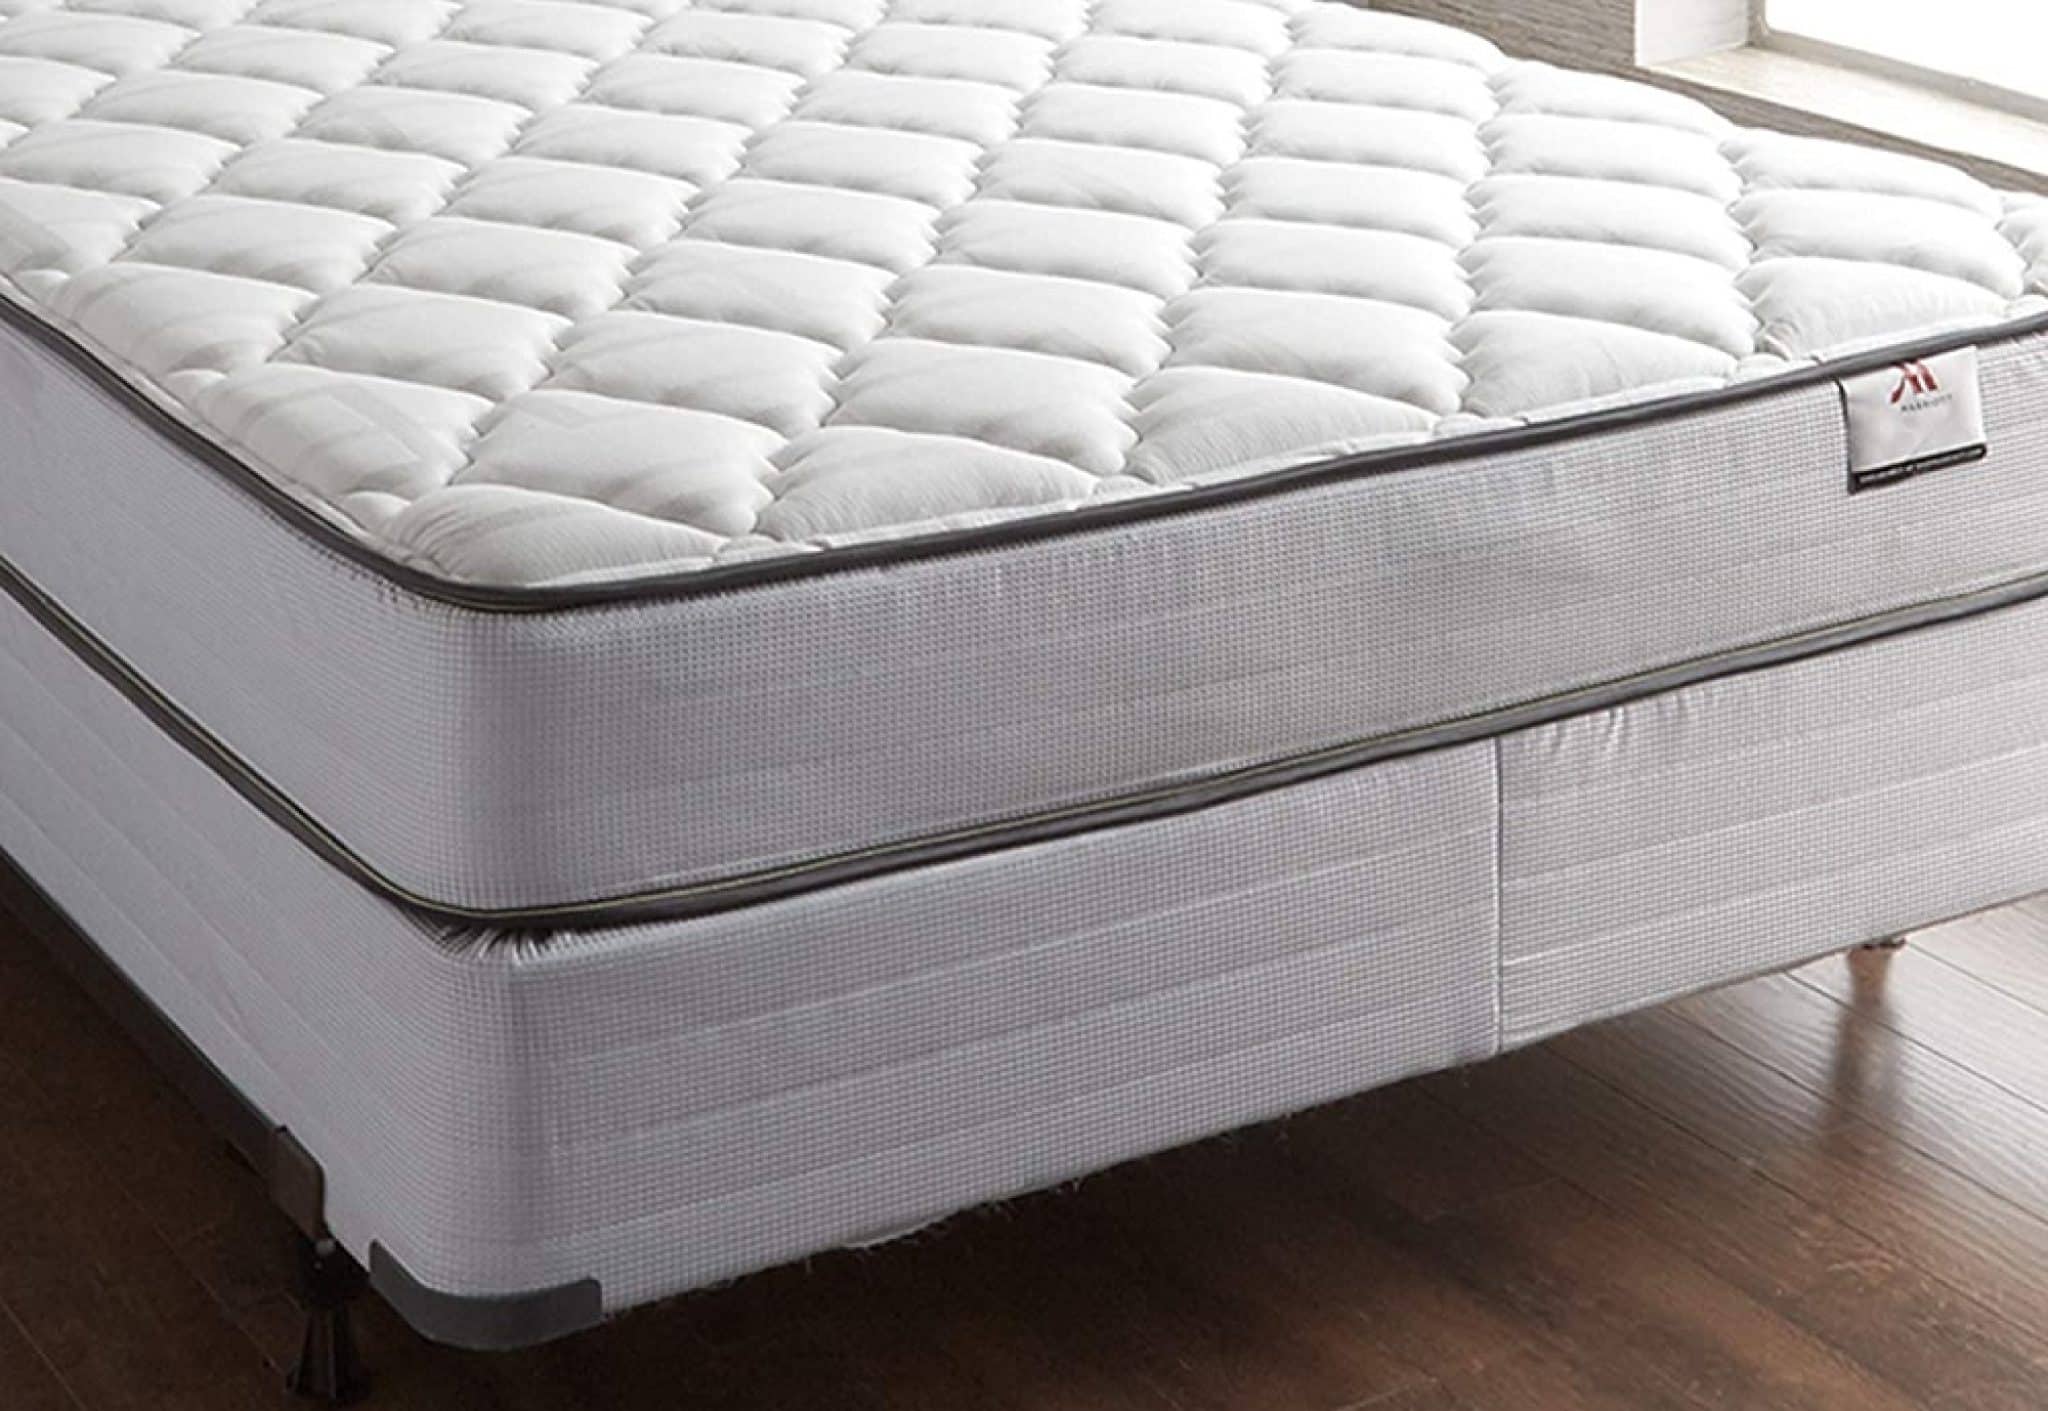 marriott hotel mattress pads